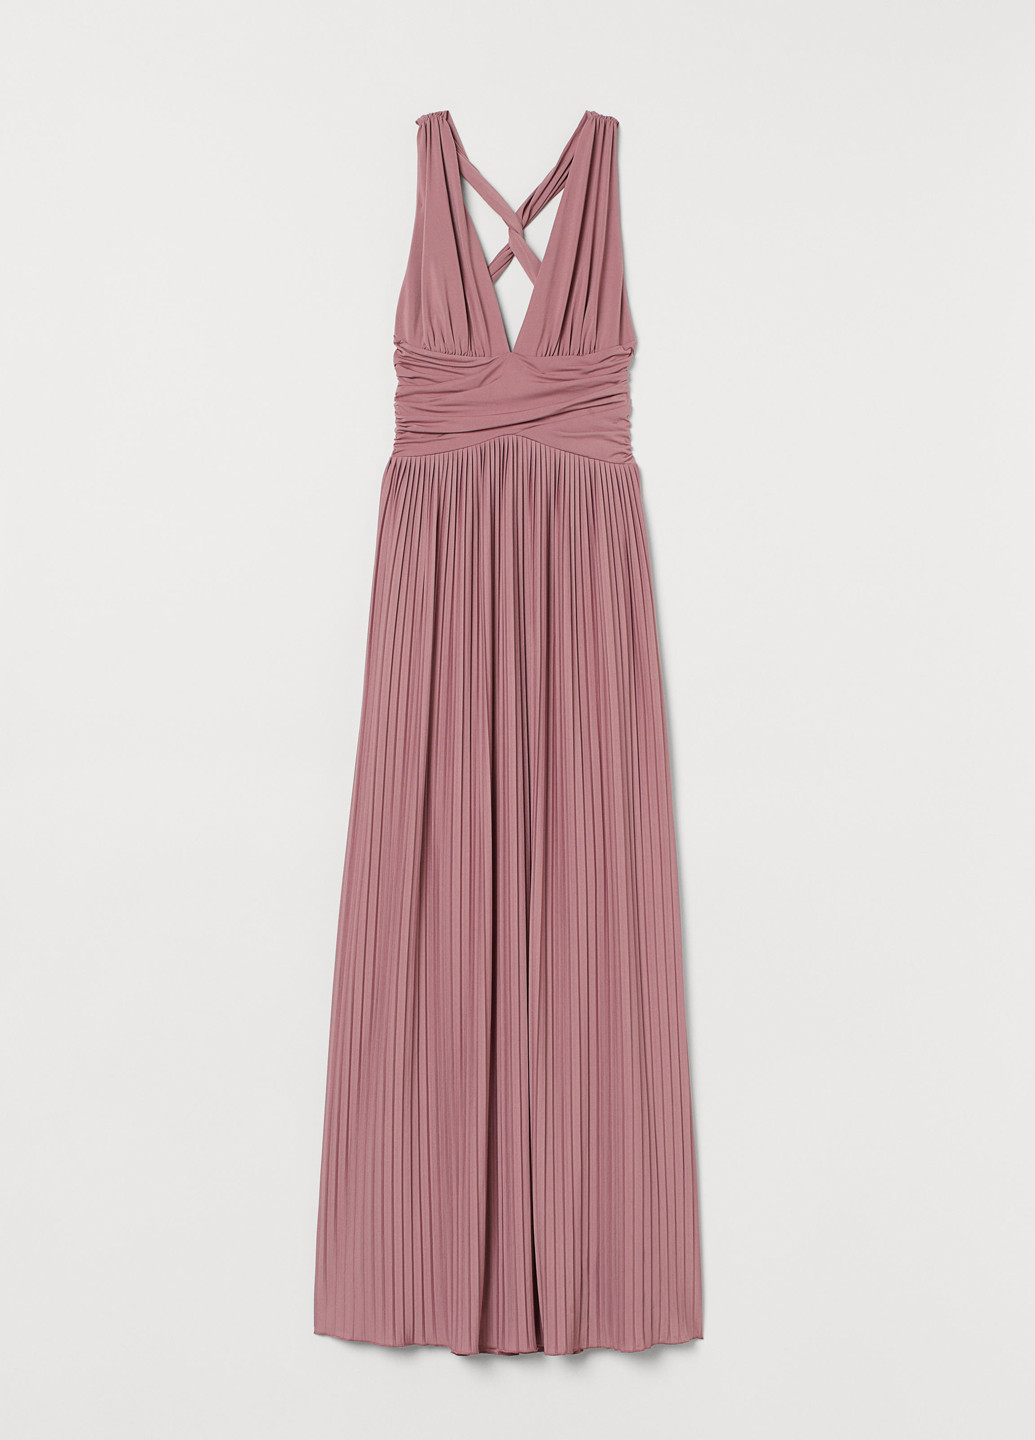 Розово-лиловое вечернее платье плиссированное, с открытой спиной, в греческом стиле H&M однотонное